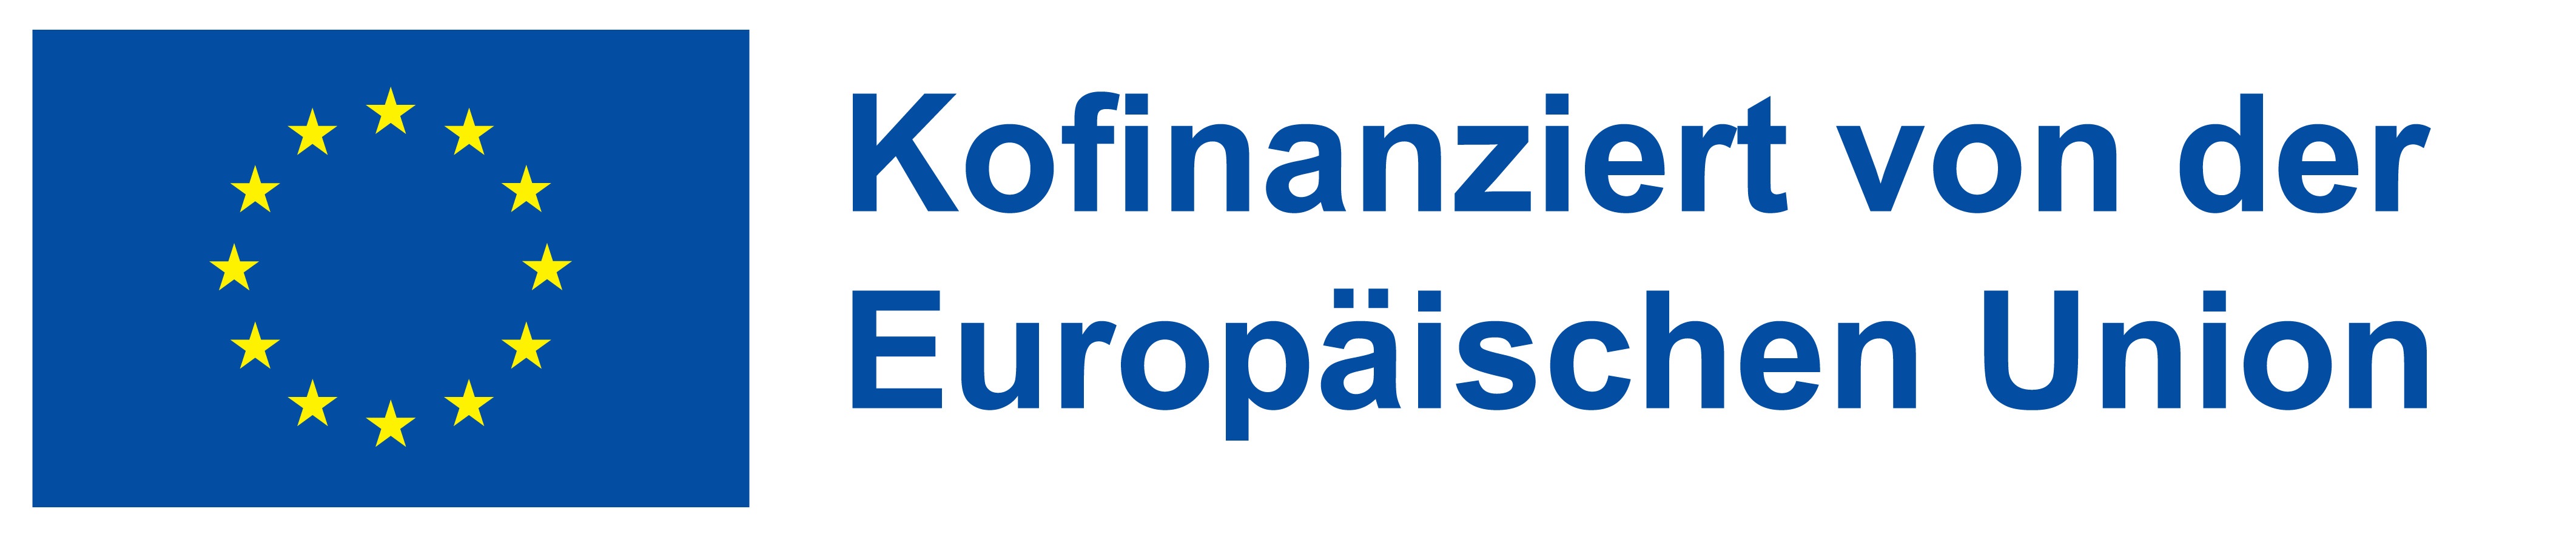 DE Kofinanziert von der Europäischen Union_POSneu (1)